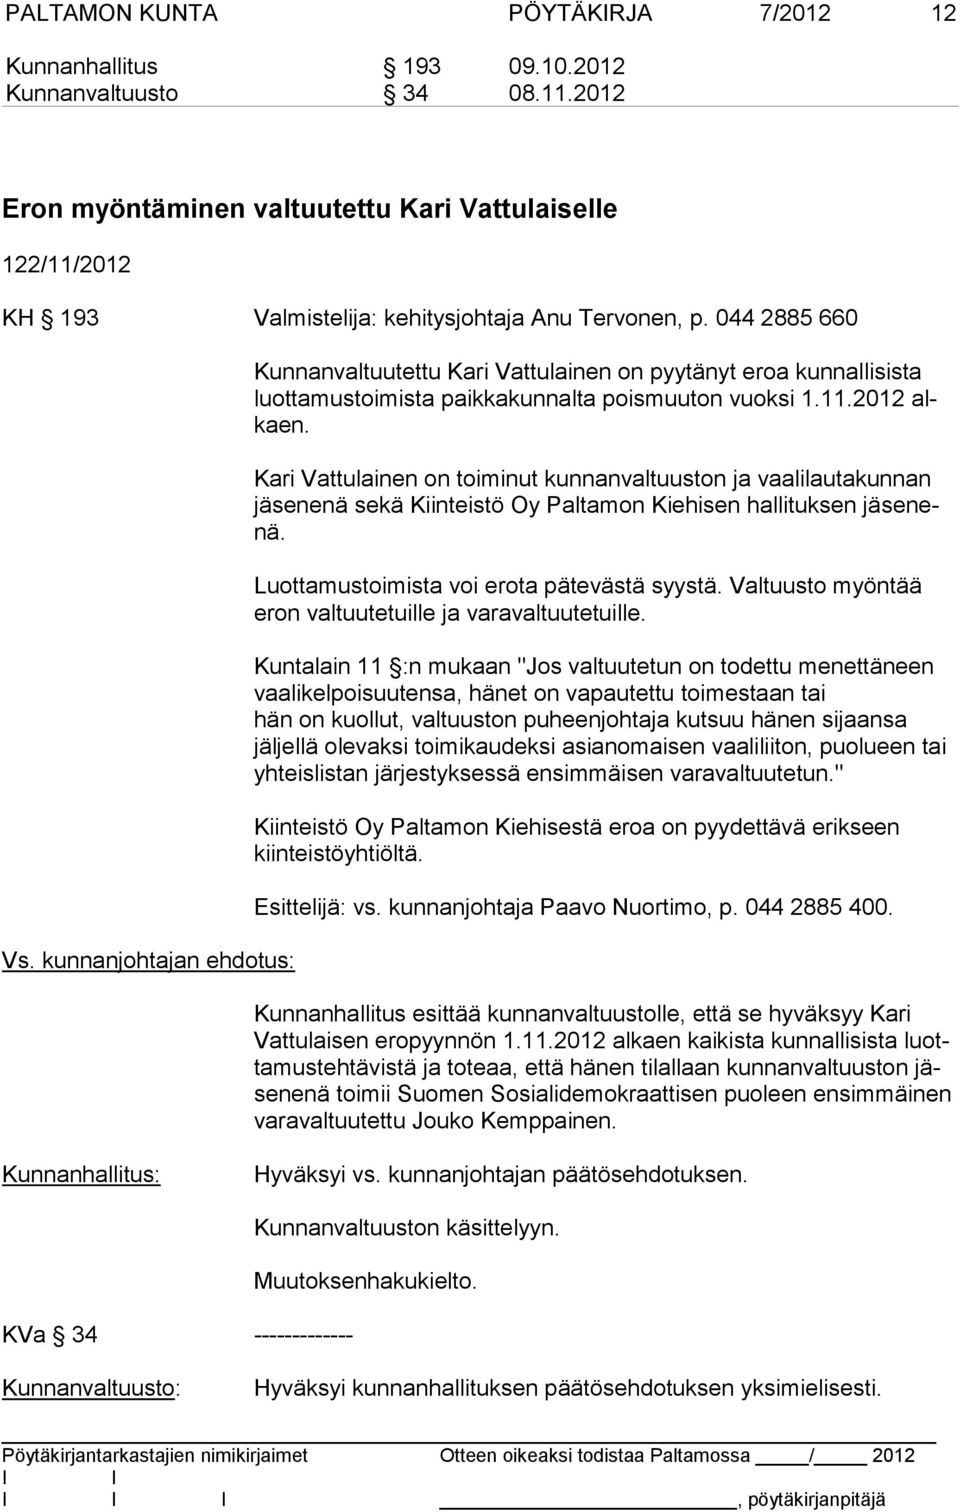 kunnanjohtajan ehdotus: Kunnanvaltuutettu Kari Vattulainen on pyytänyt eroa kunnallisista luot ta mus toi mis ta paikkakunnalta poismuuton vuoksi 1.11.2012 alkaen.